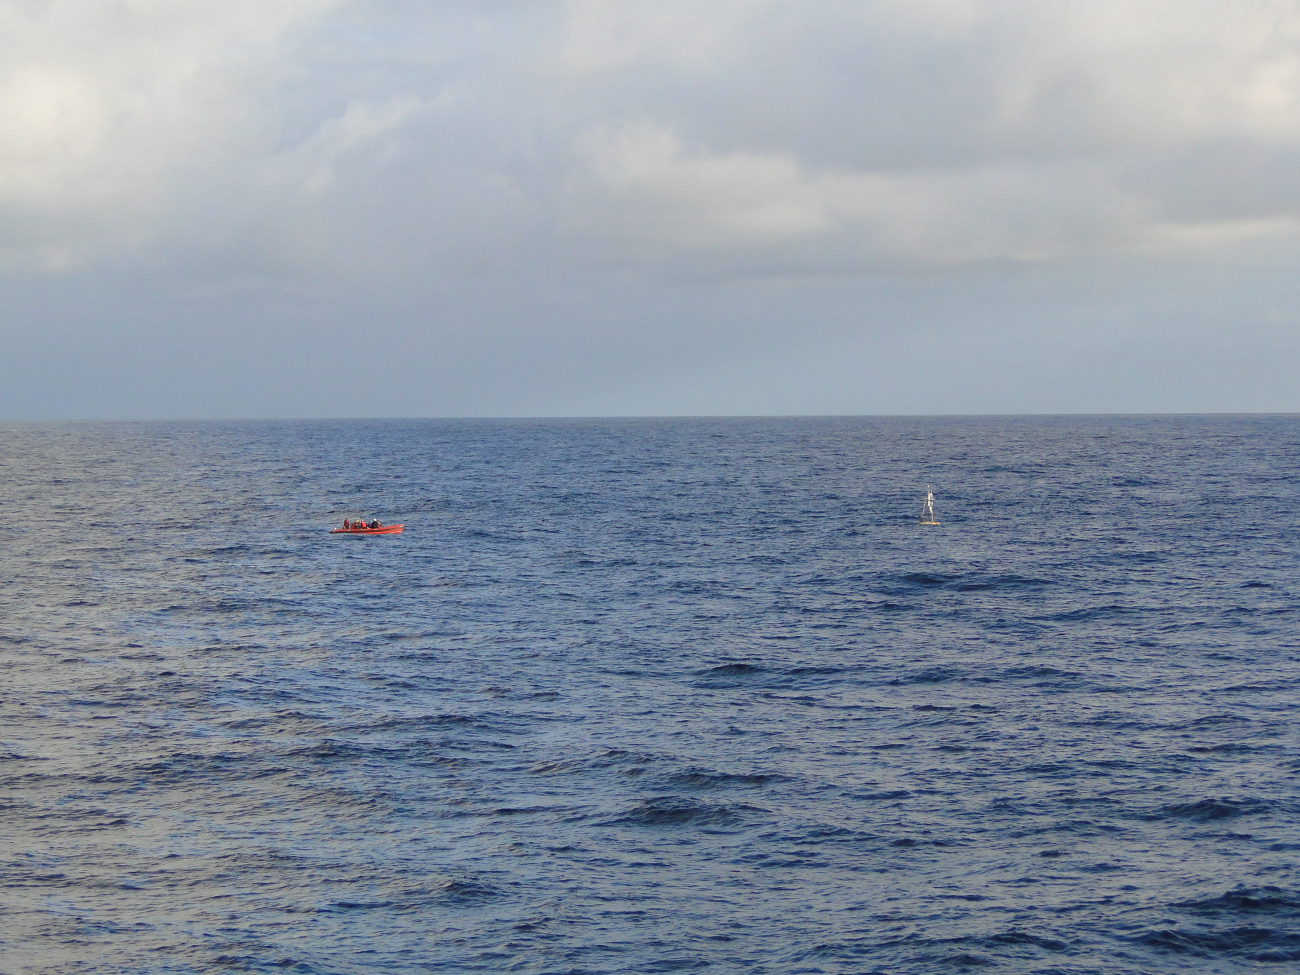 TAO buoy operations off the NOAA Ship Ka'imimoana